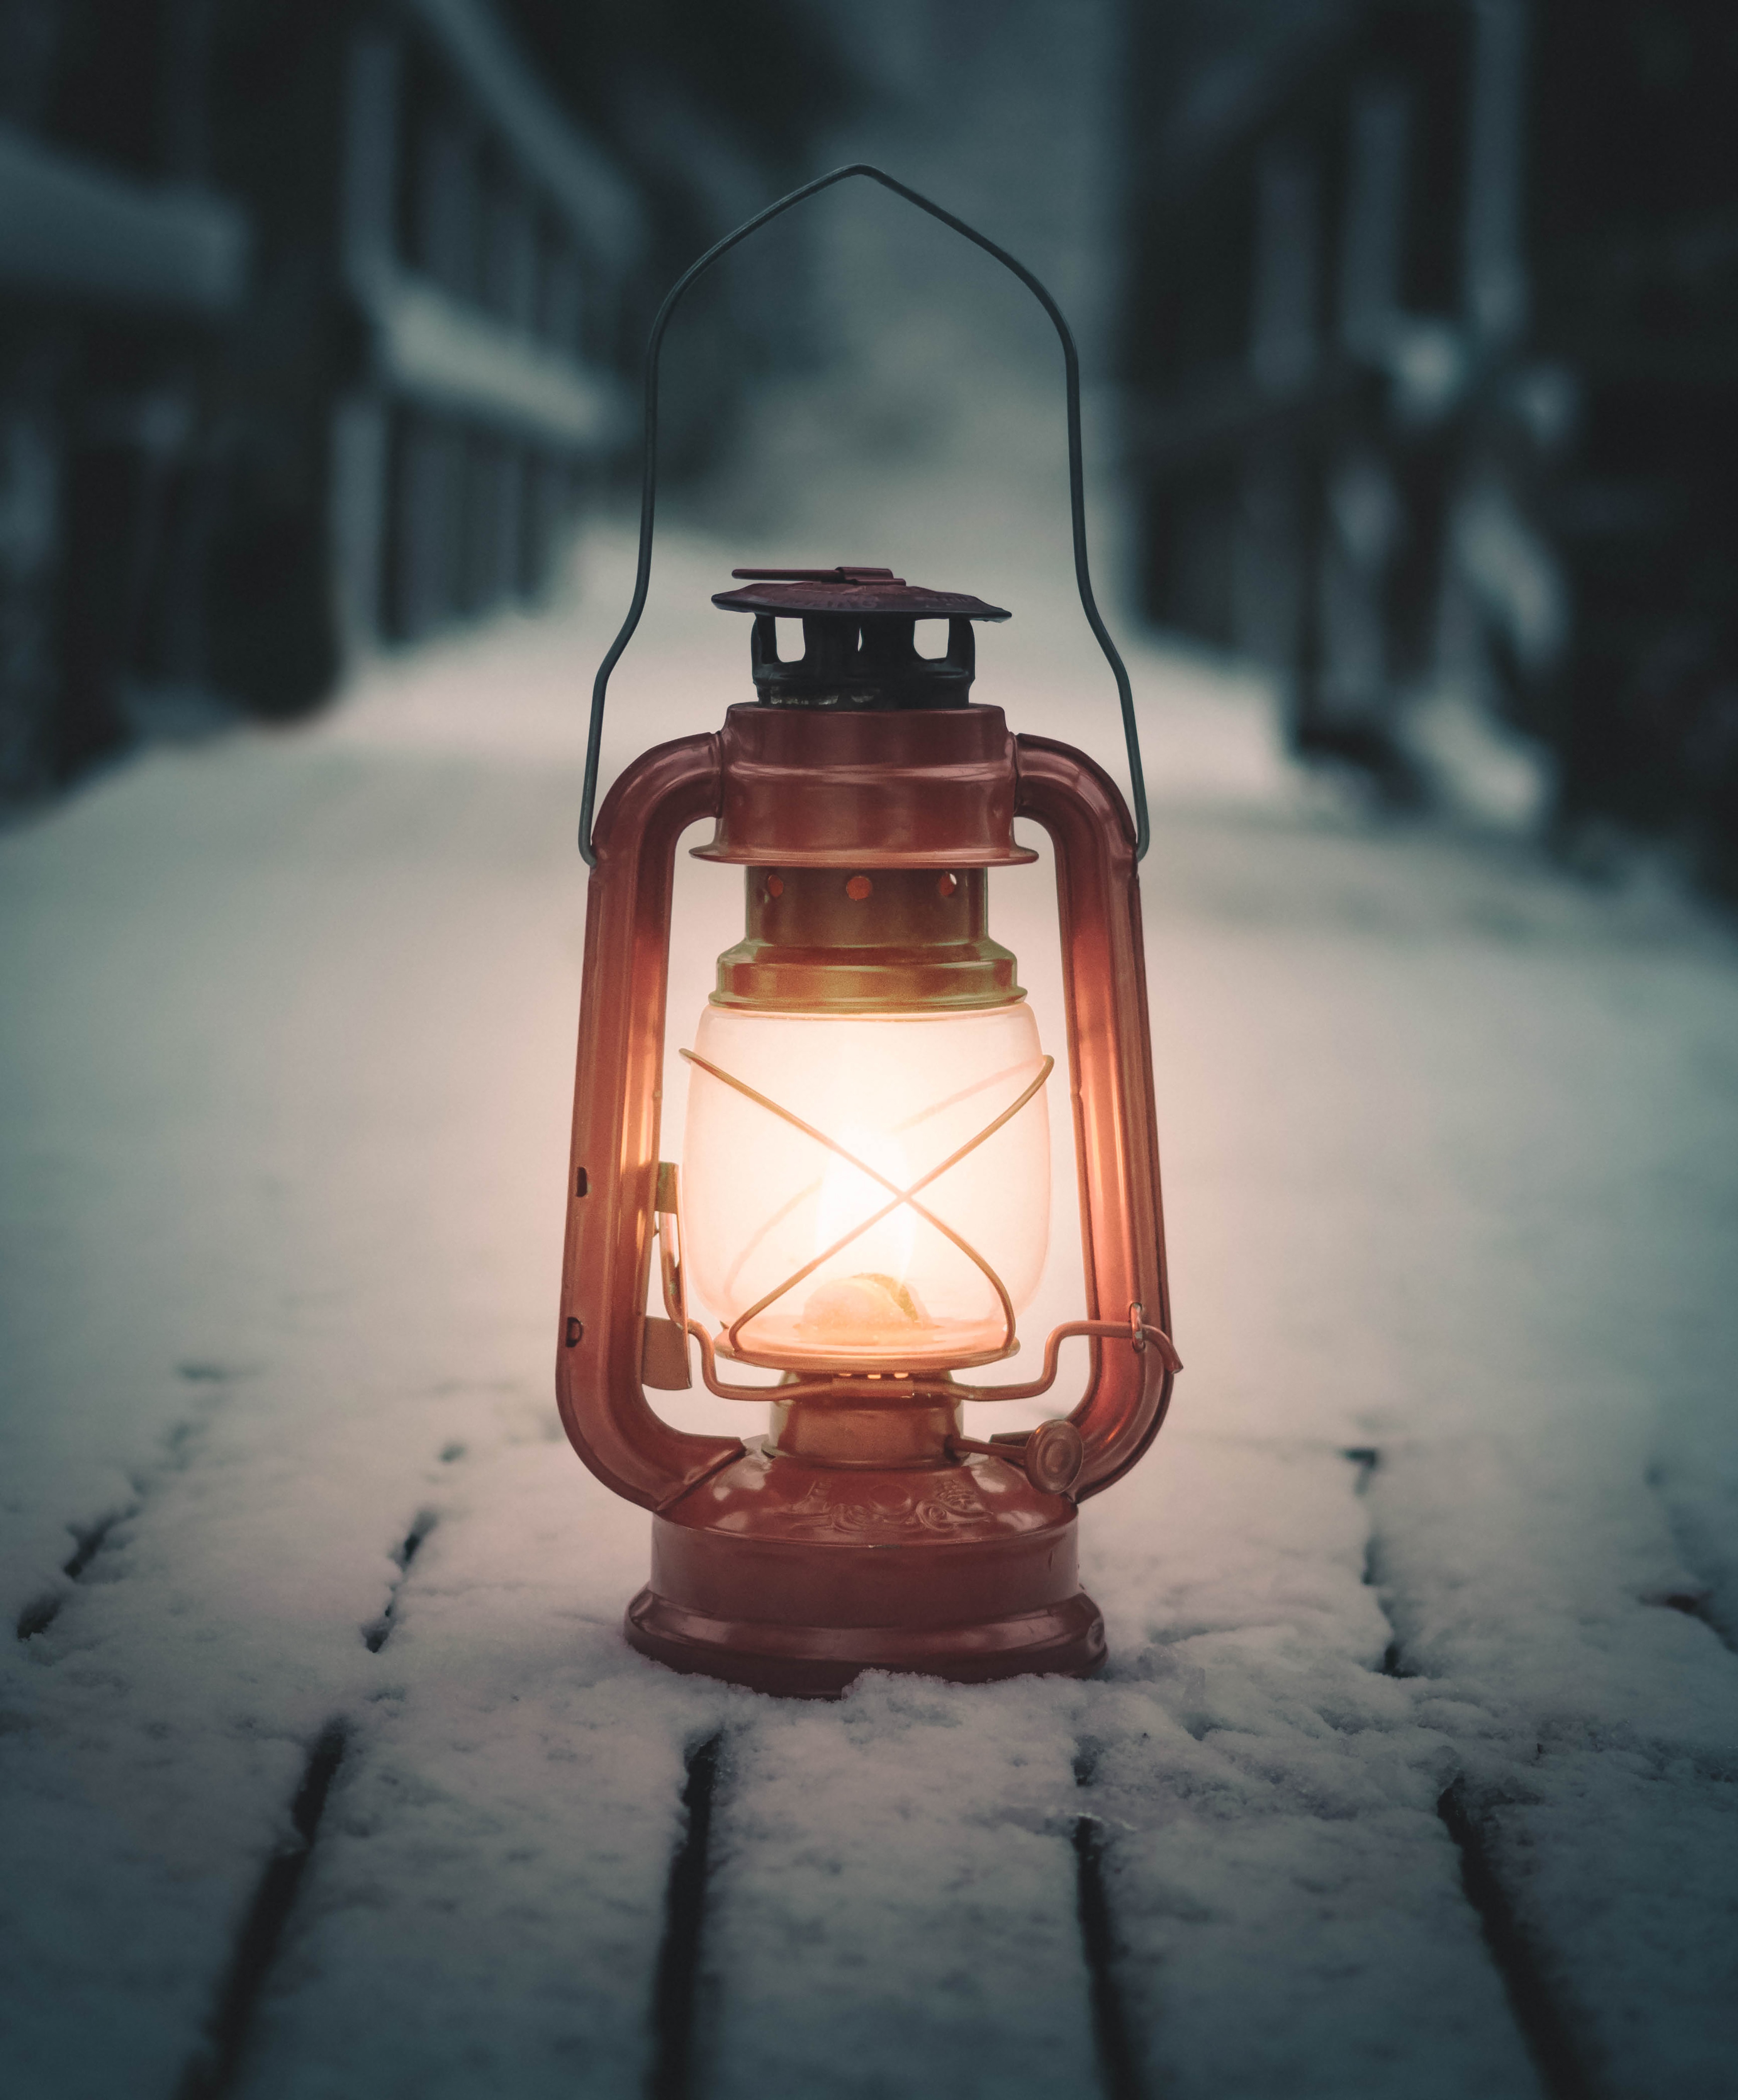 android lamp, miscellanea, snow, miscellaneous, lantern